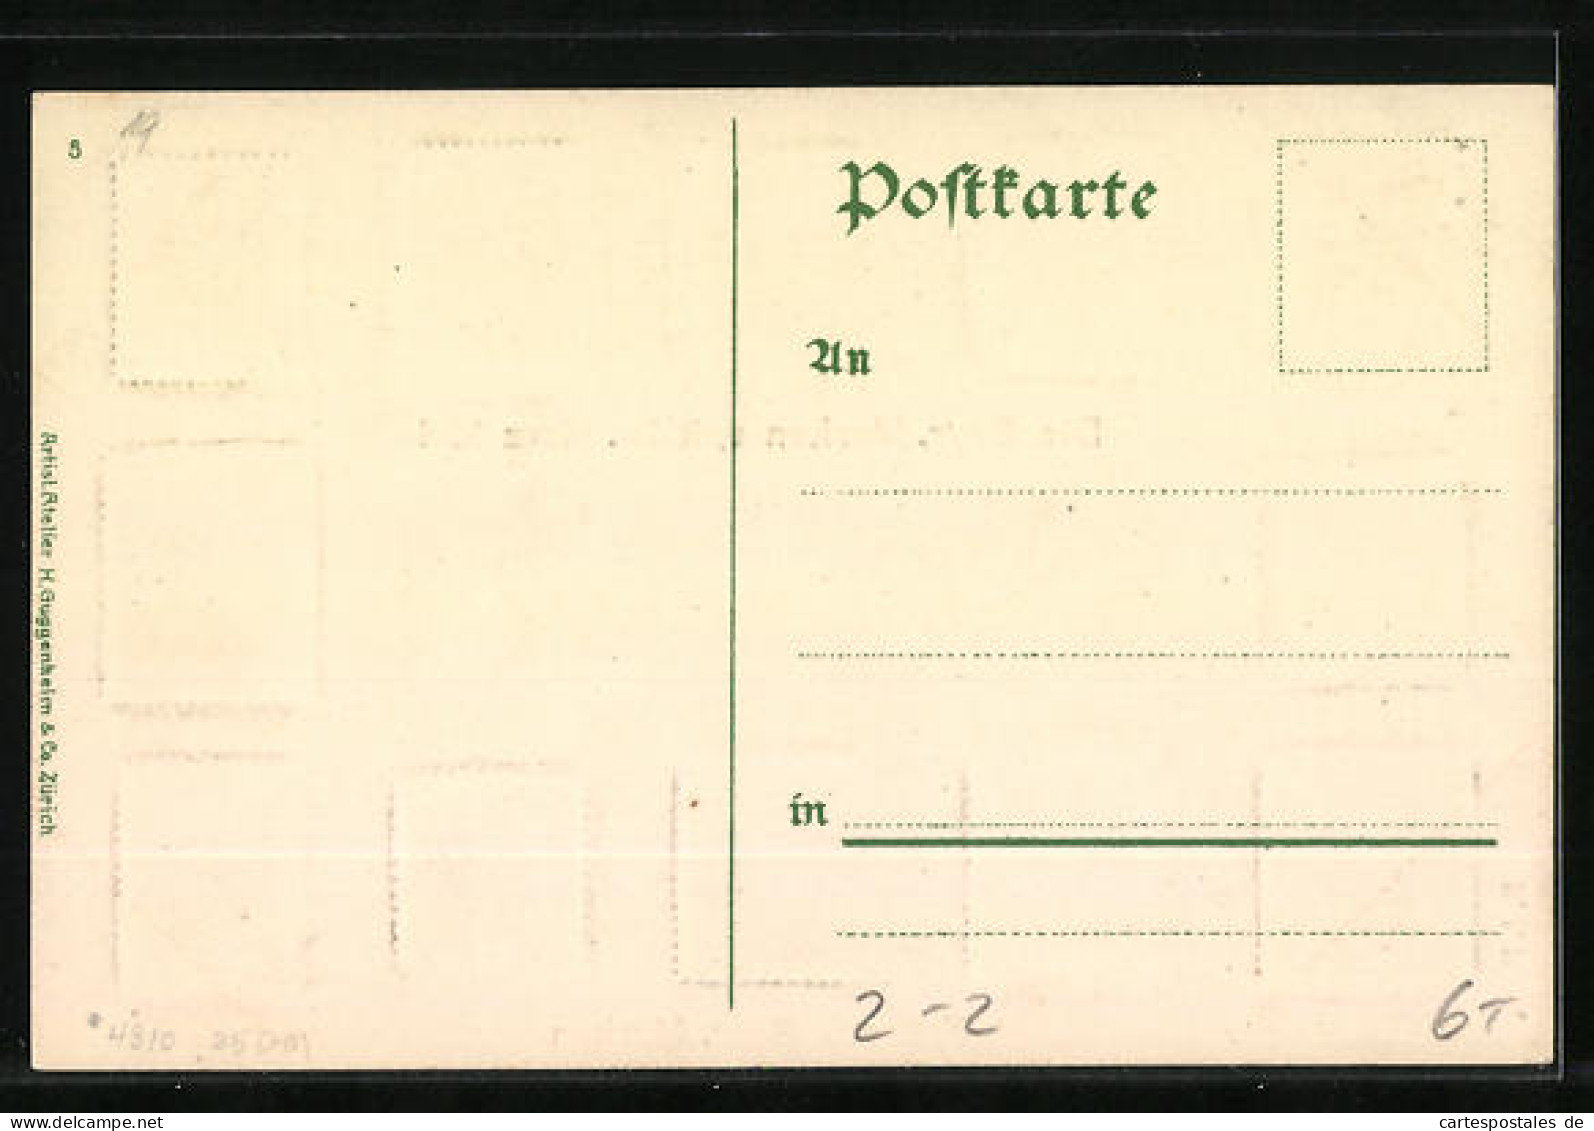 AK Die Bayr. Briefmarken Seit 1911  - Timbres (représentations)